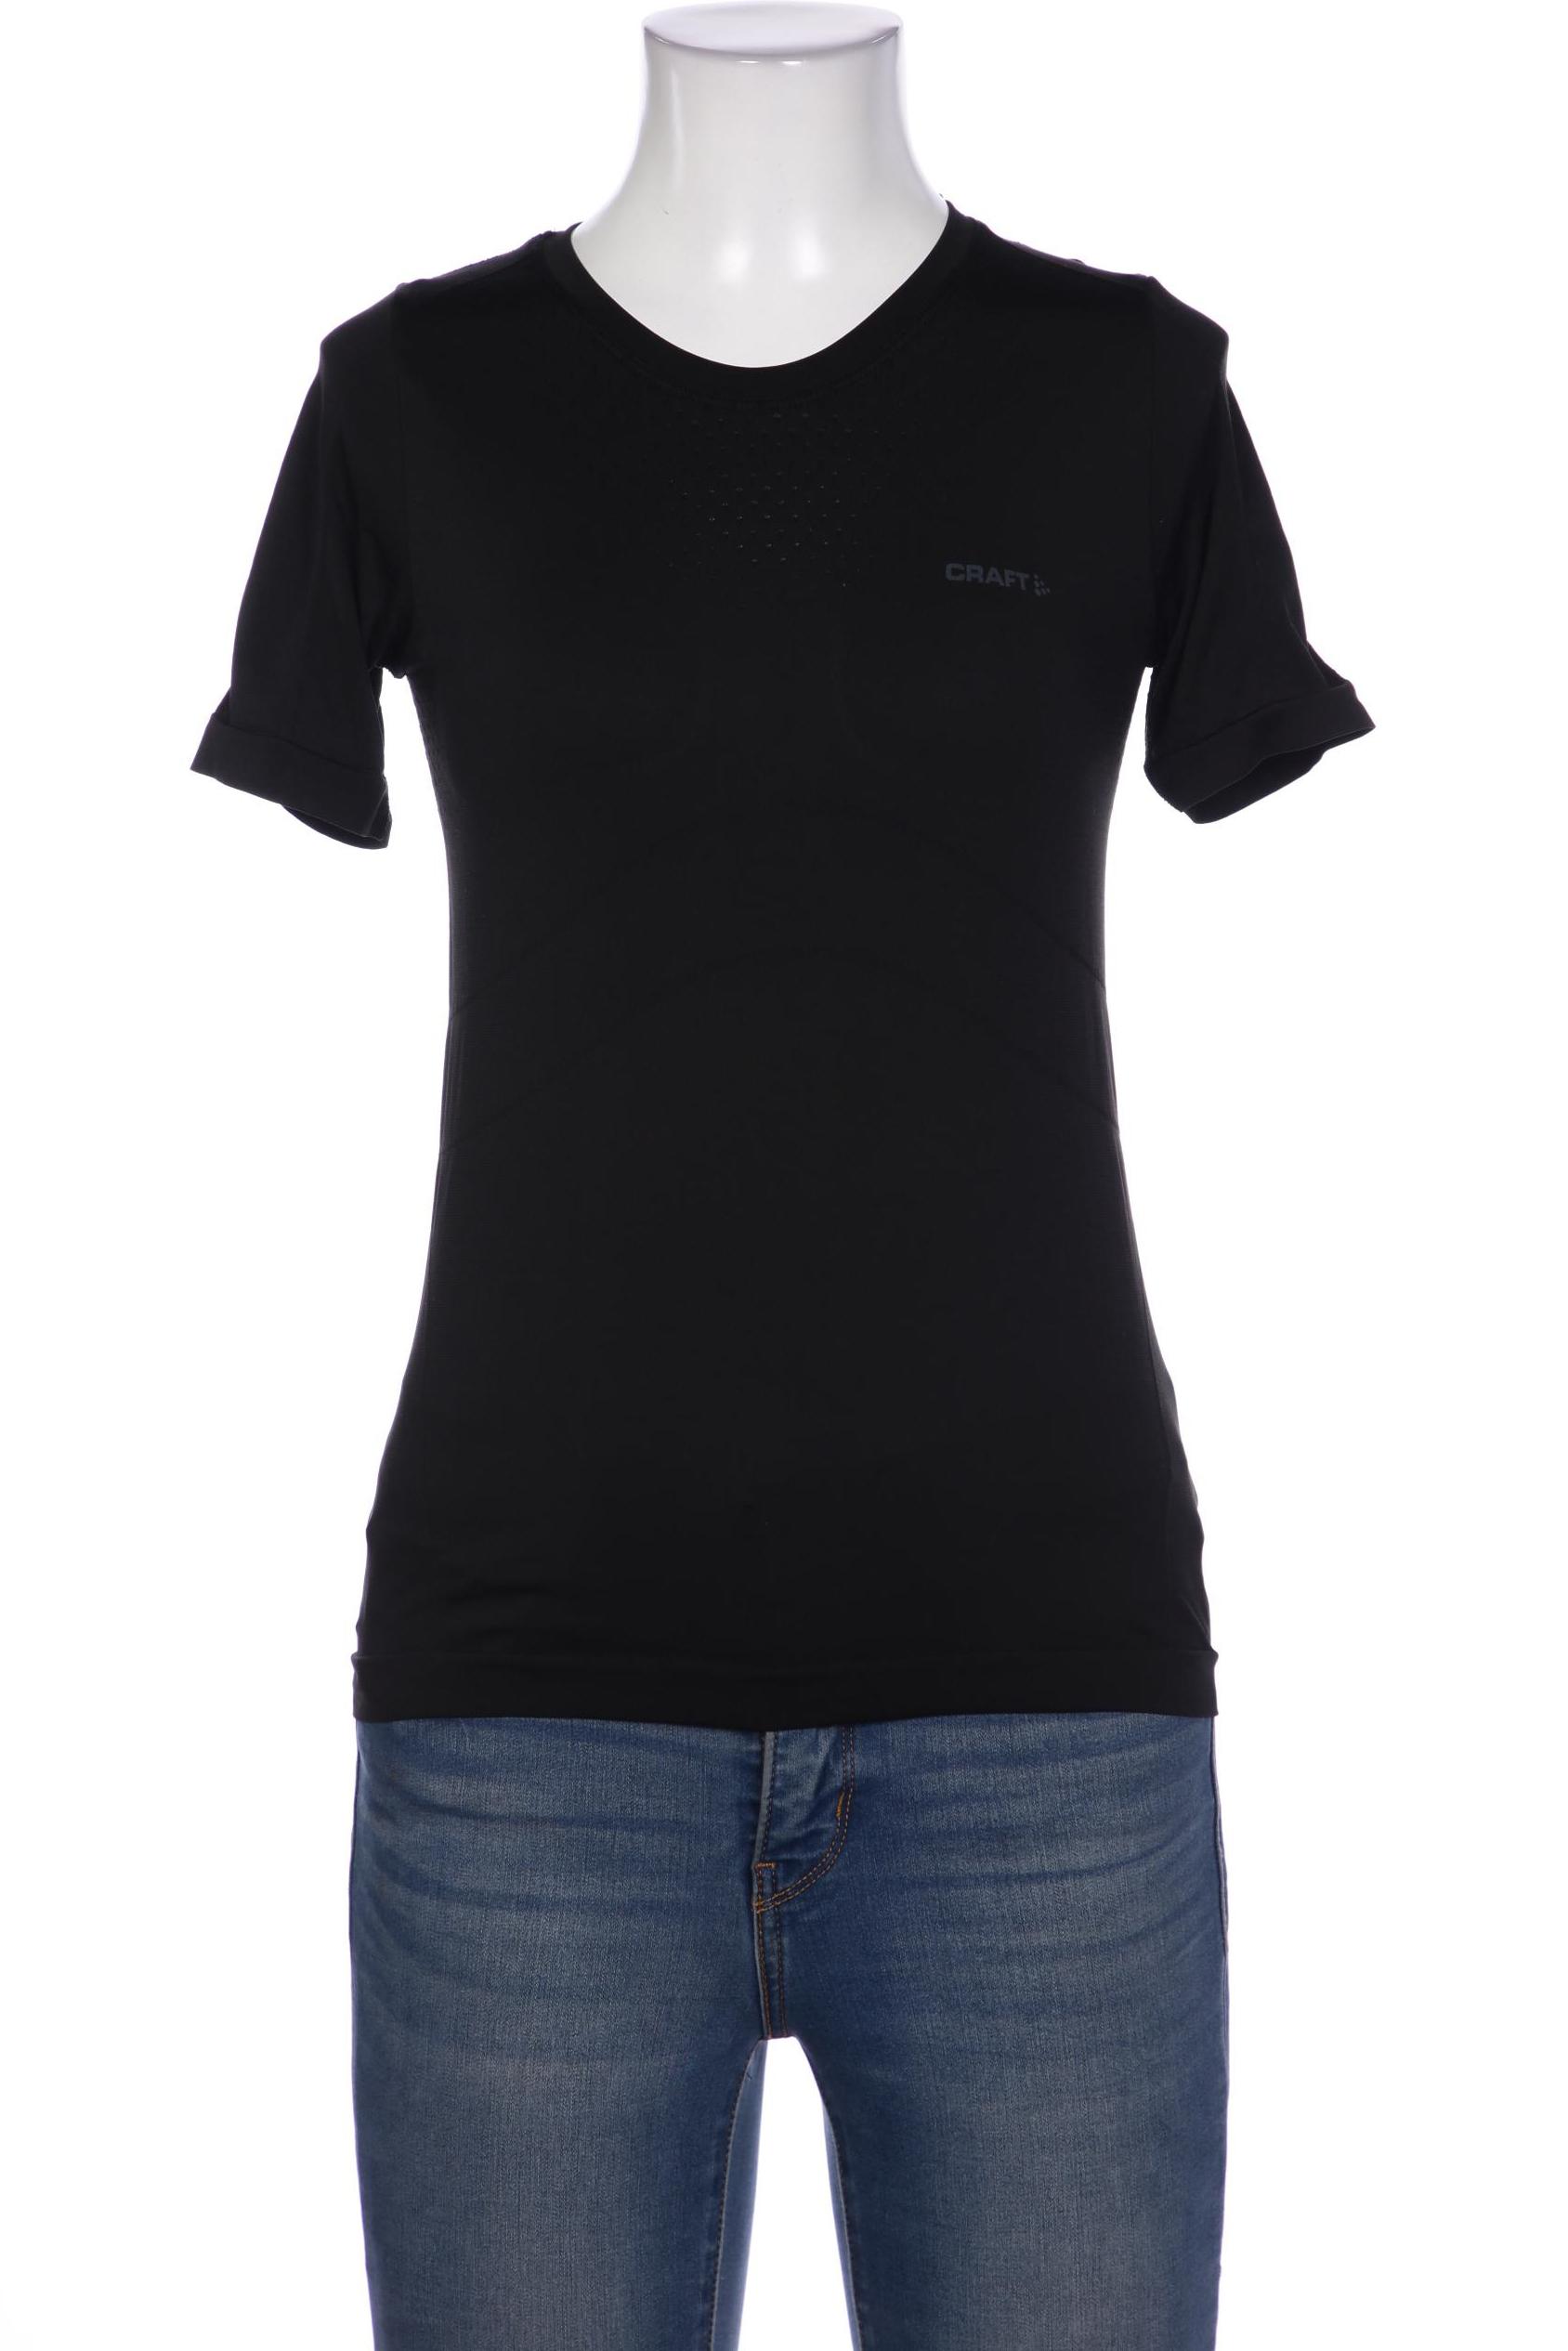 Craft Damen T-Shirt, schwarz, Gr. 36 von Craft